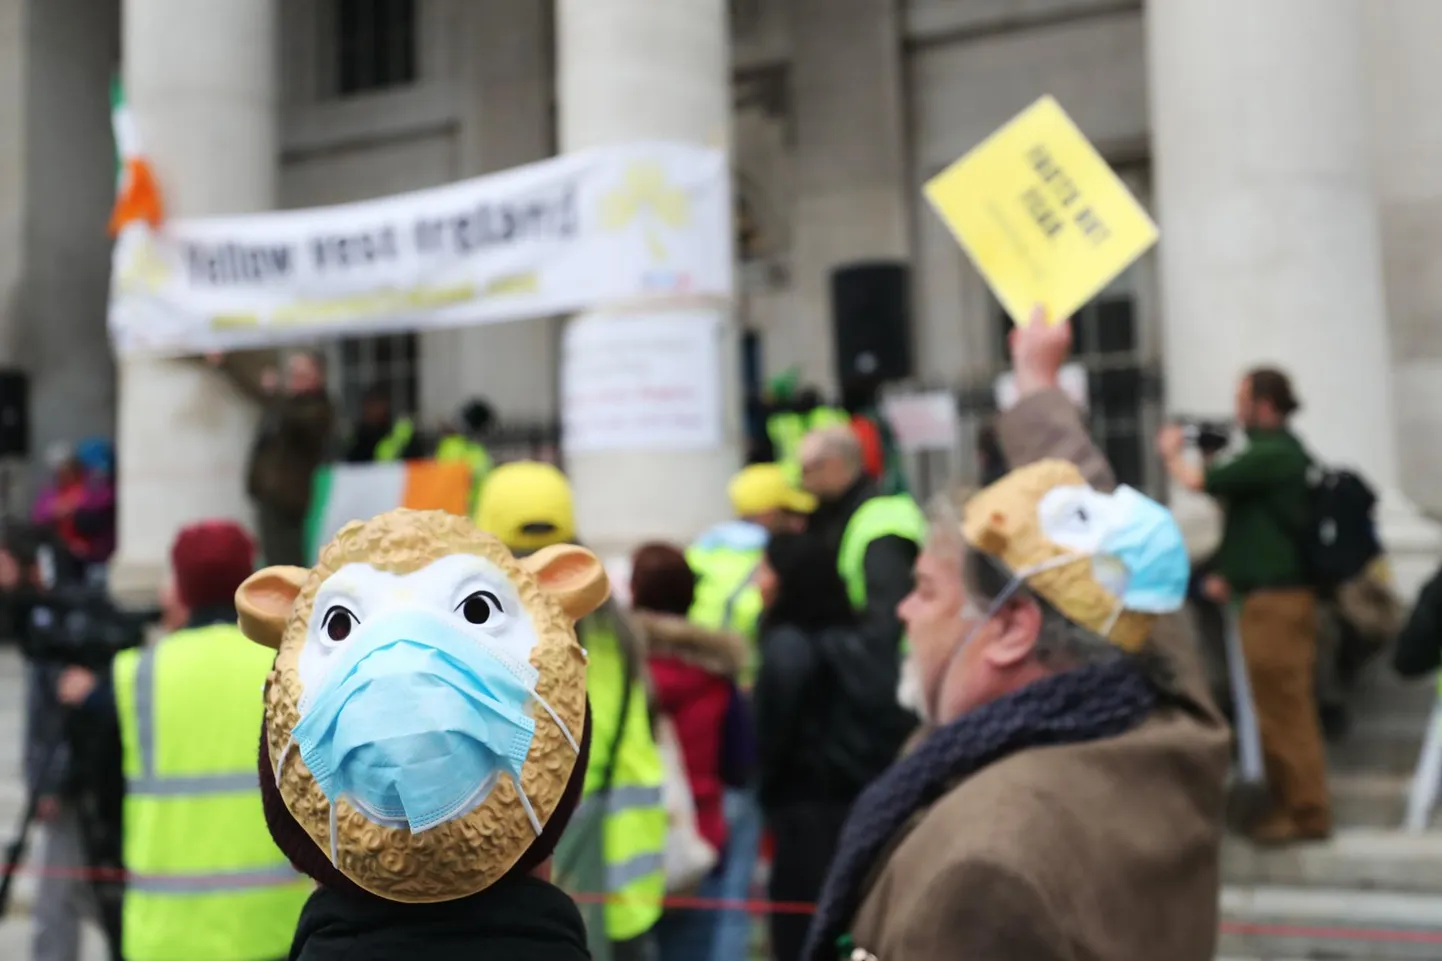 Homme korraldatakse maskivastane meeleavaldus Tallinnas, kuid mujal maailmas on neid toimunud juba ridamisi. Nii nagu Eestiski tehakse, kujutasid ka pildil olevad Iiri protesteerijad maskikandjaid lammastena.